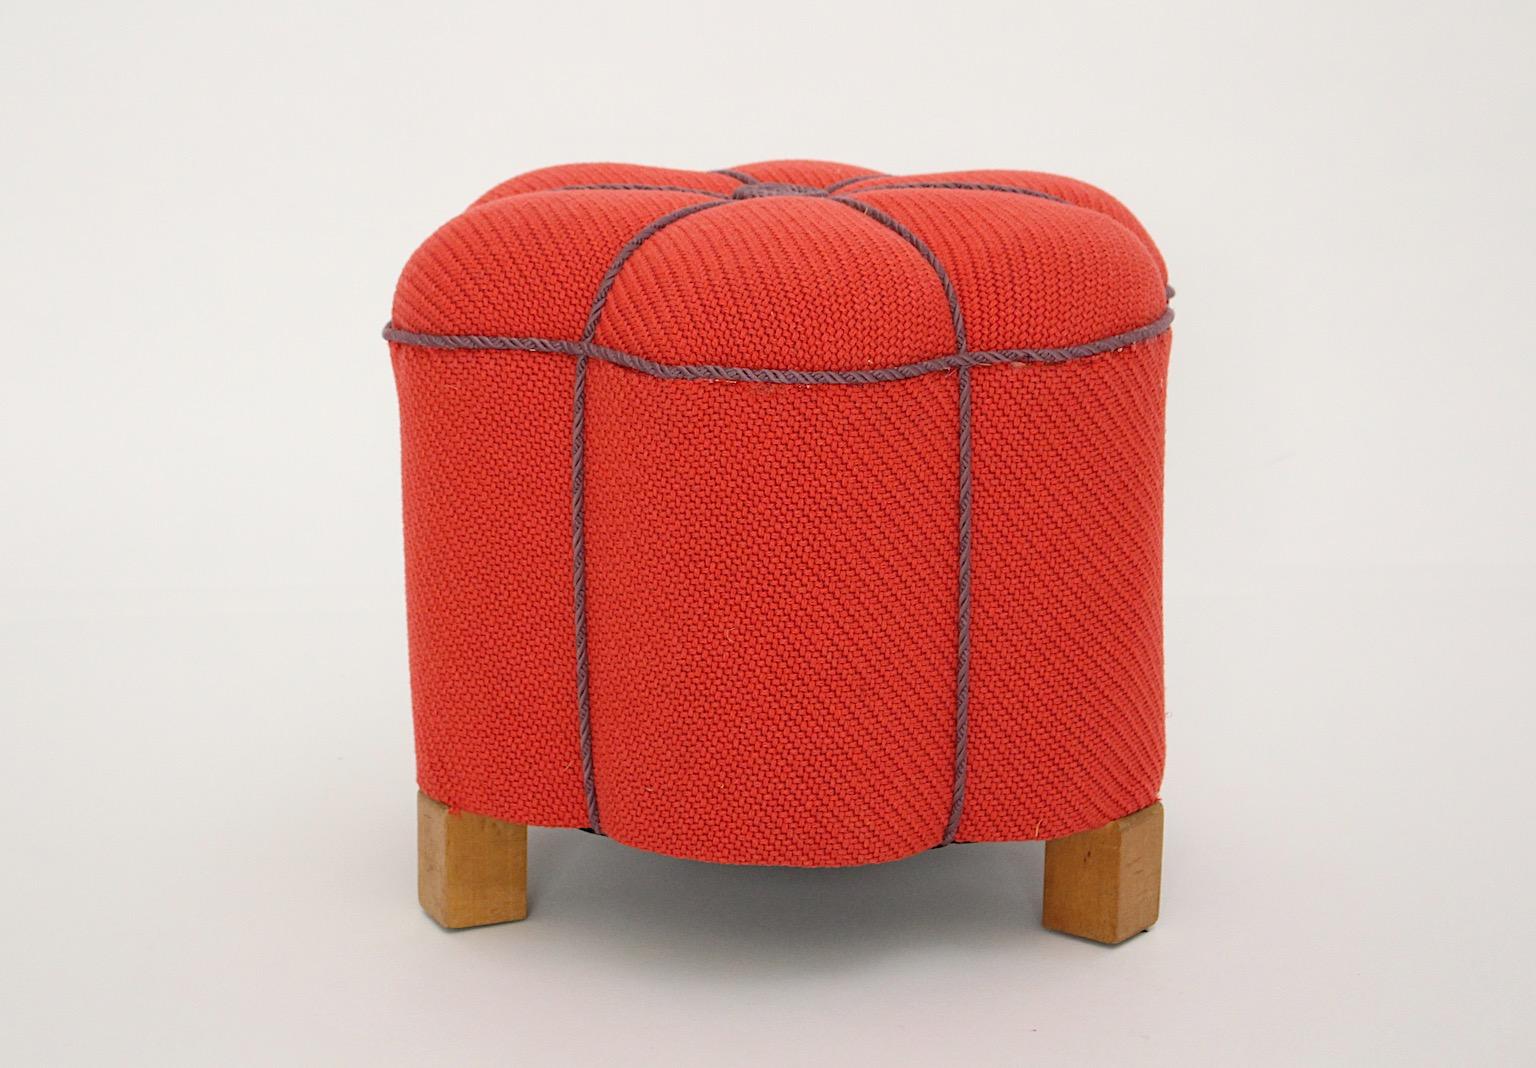 Tabouret ottoman pouf vintage Art Deco en tissu rouge corail et cordes lavande conçu et fabriqué en Autriche dans les années 1930.
Un tissu texturé de haute qualité présente une couleur rouge semblable à un rouge à lèvres et les cordes lavande